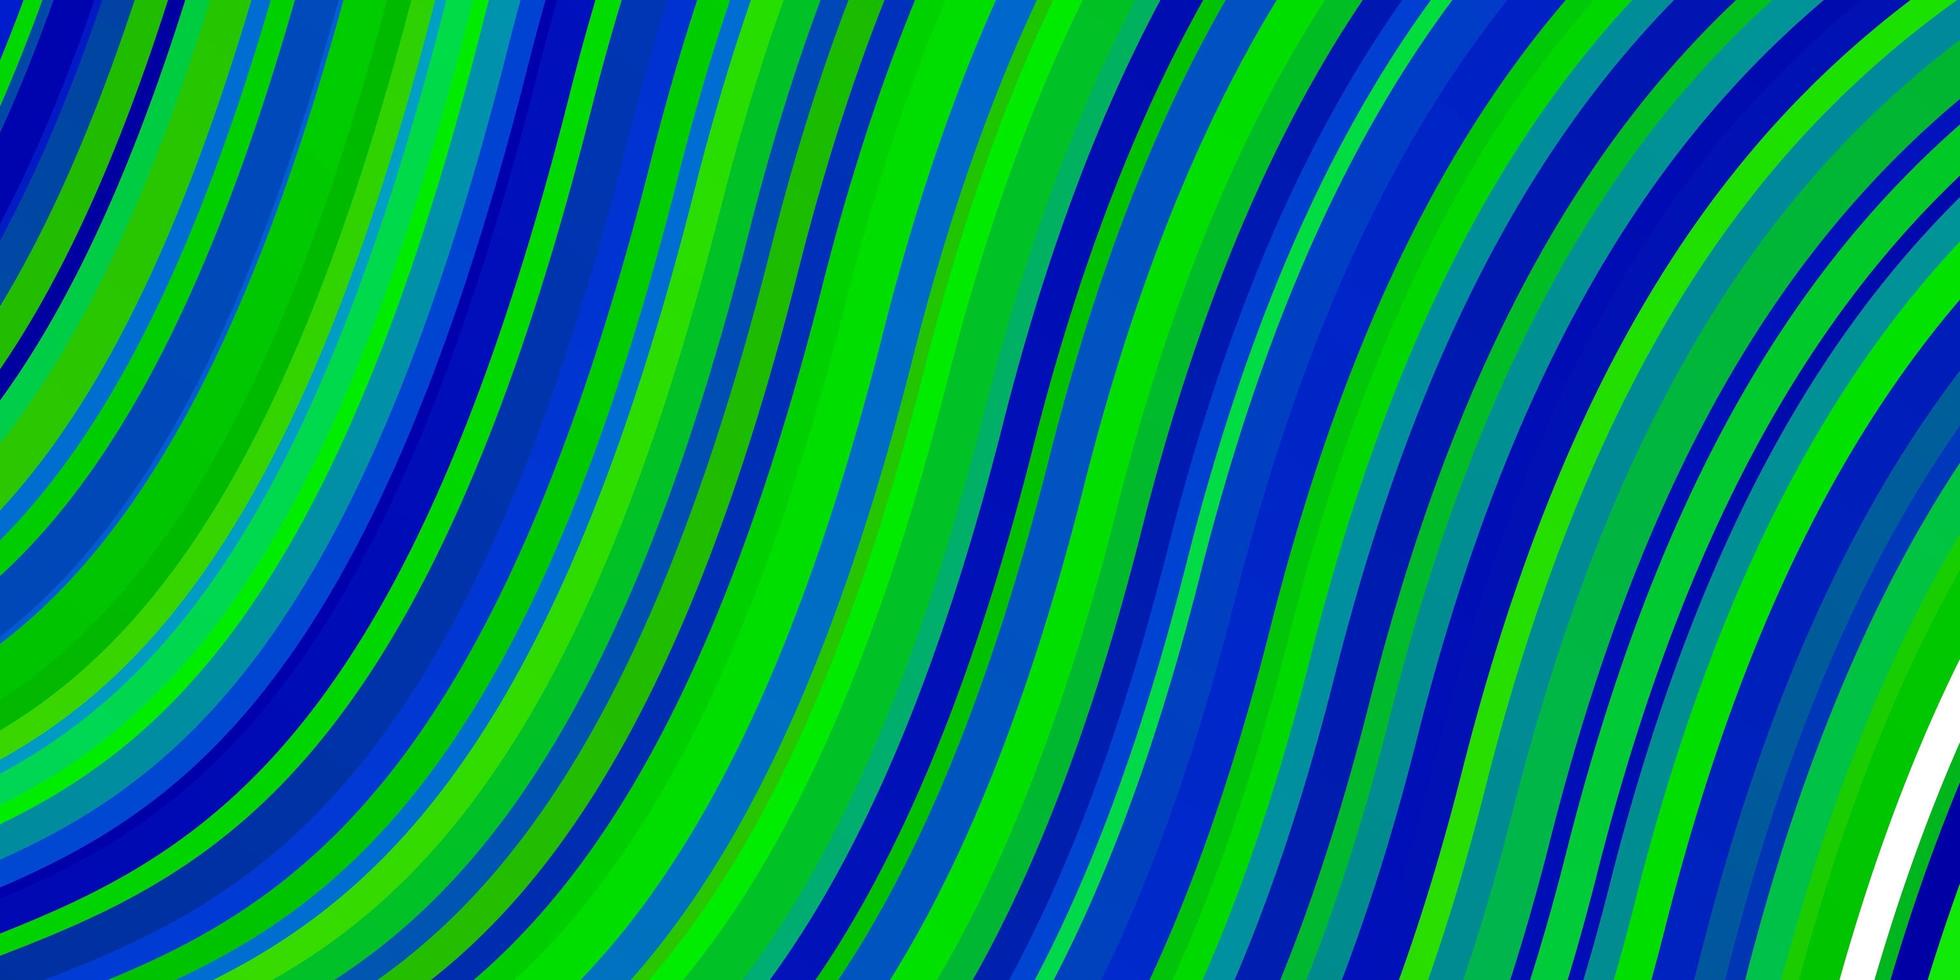 hellblauer, grüner Vektorhintergrund mit gebogenen Linien. bunte Illustration, die aus Kurven besteht. Muster für Geschäftsbroschüren, Broschüren vektor